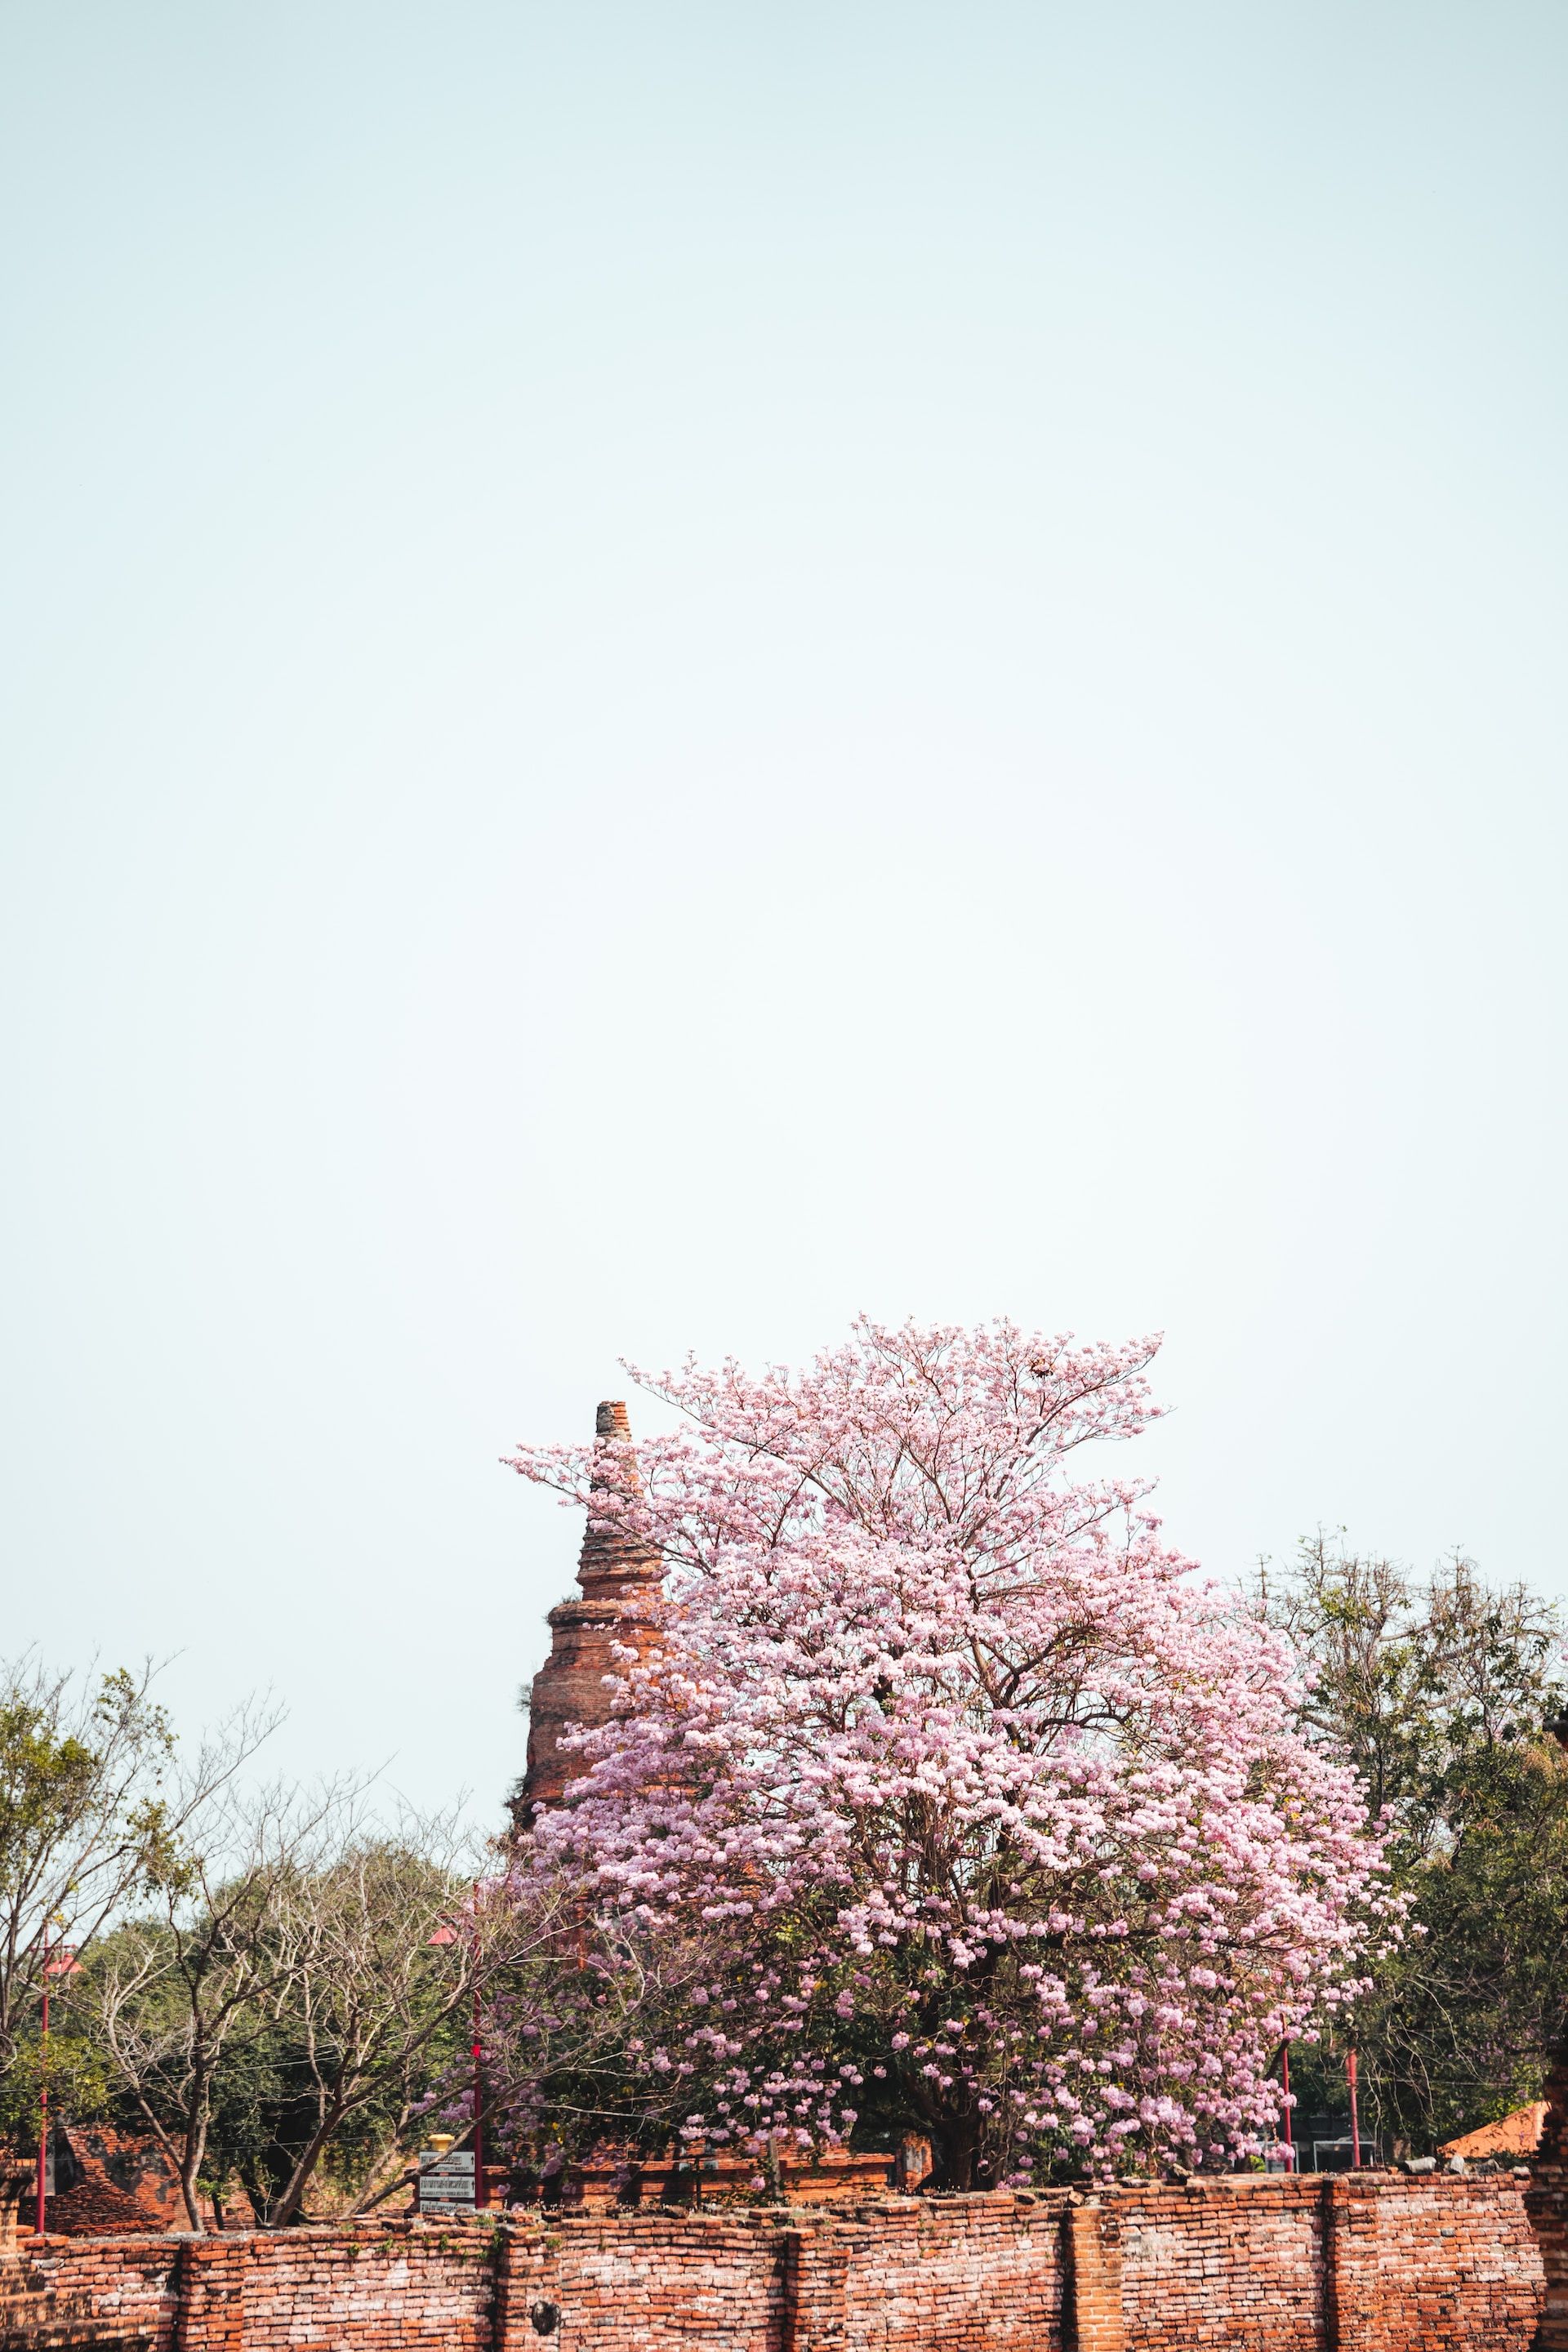 Cherry blossoms in Ayutthaya Thailand